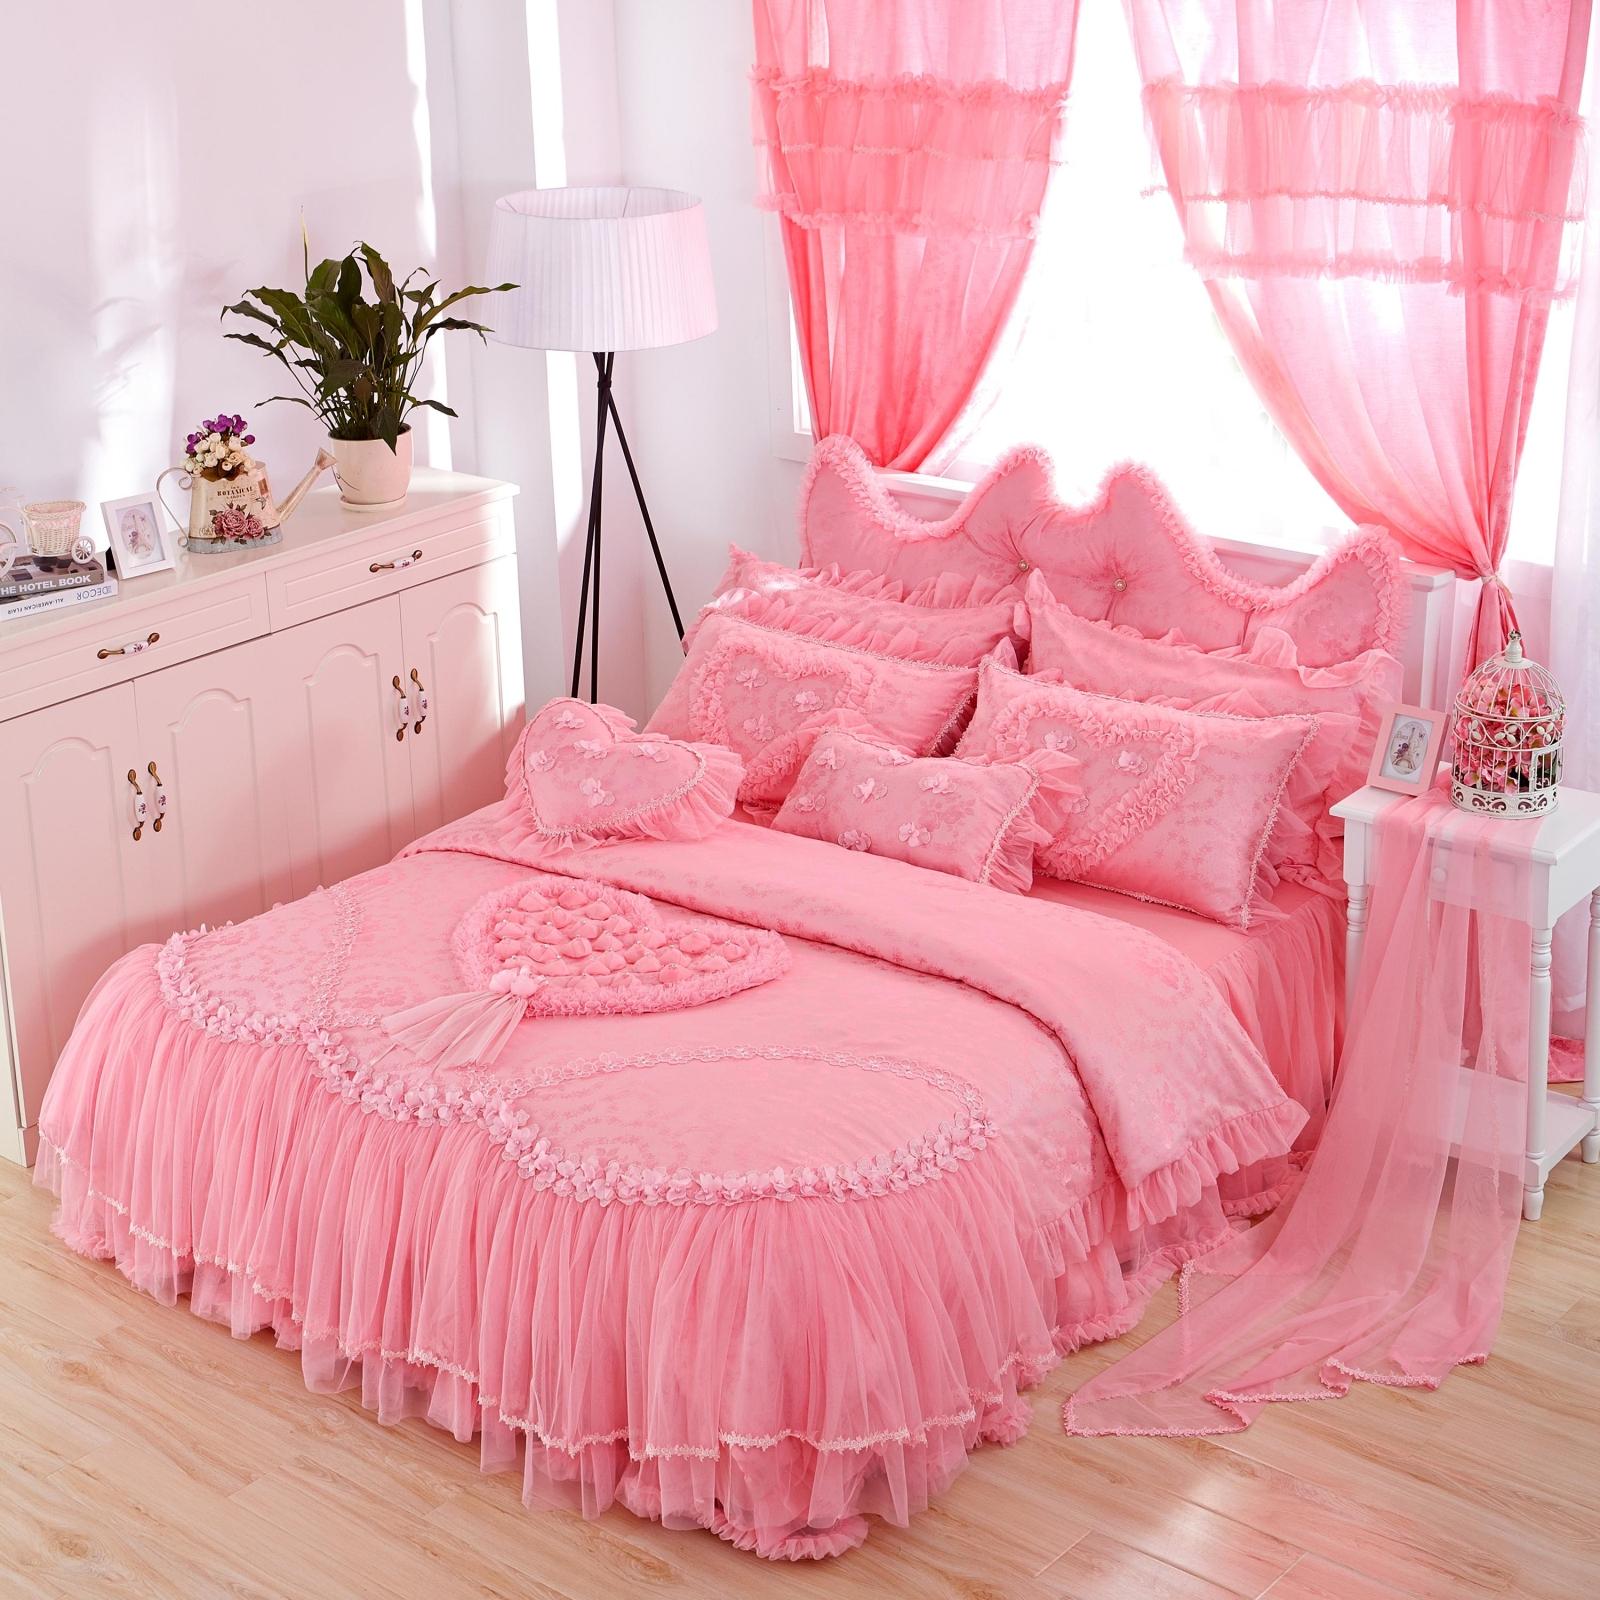 全棉韩式粉色公主蕾丝花边床裙式四件套纯棉床单被套婚庆床上用品